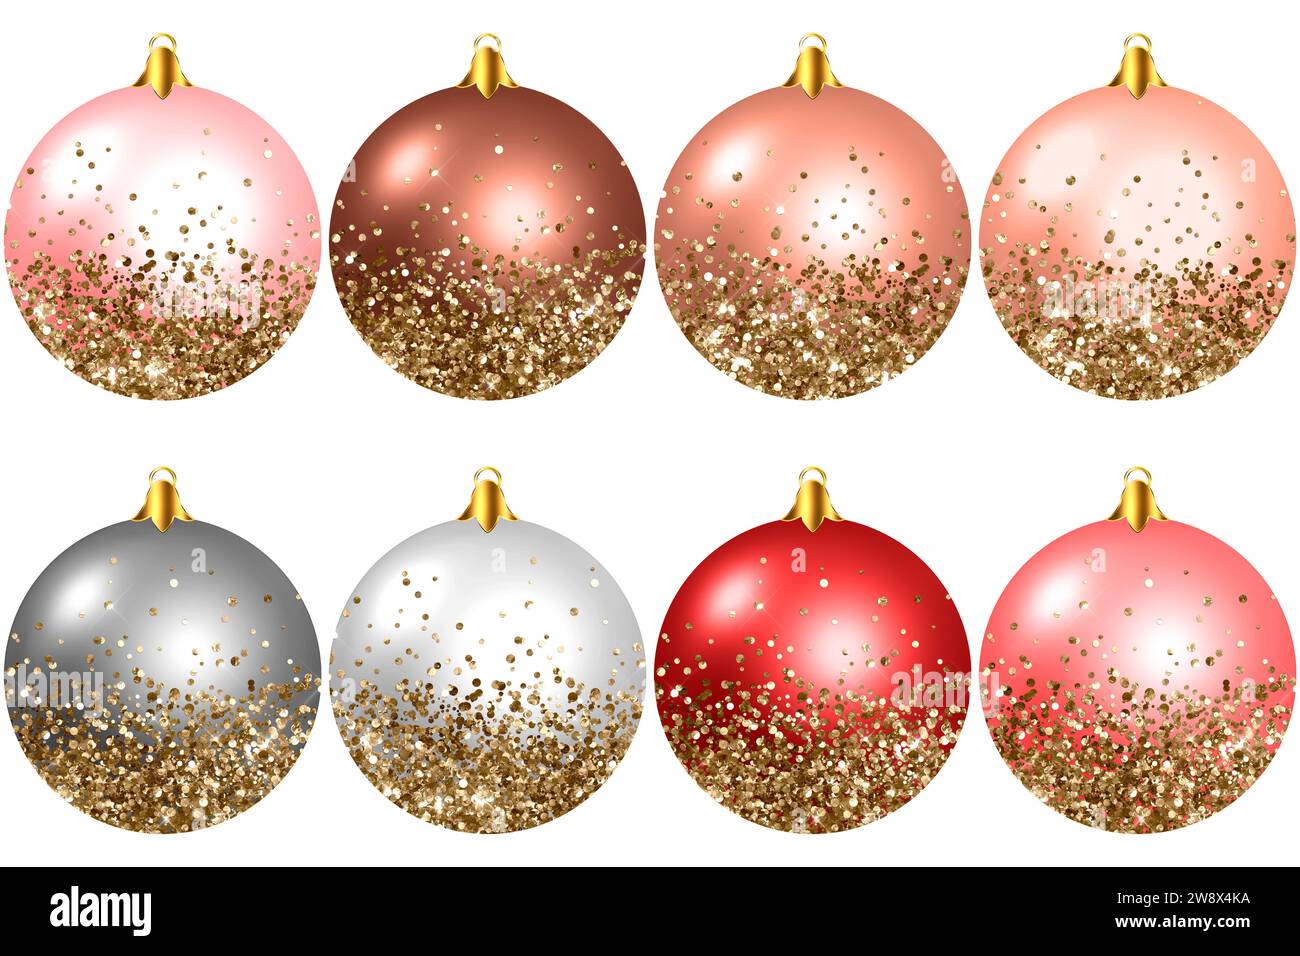 Rehaussez vos créations de vacances avec de superbes boules de Noël scintillantes dorées. Parfait pour la créativité festive et les projets joyeux. Banque D'Images